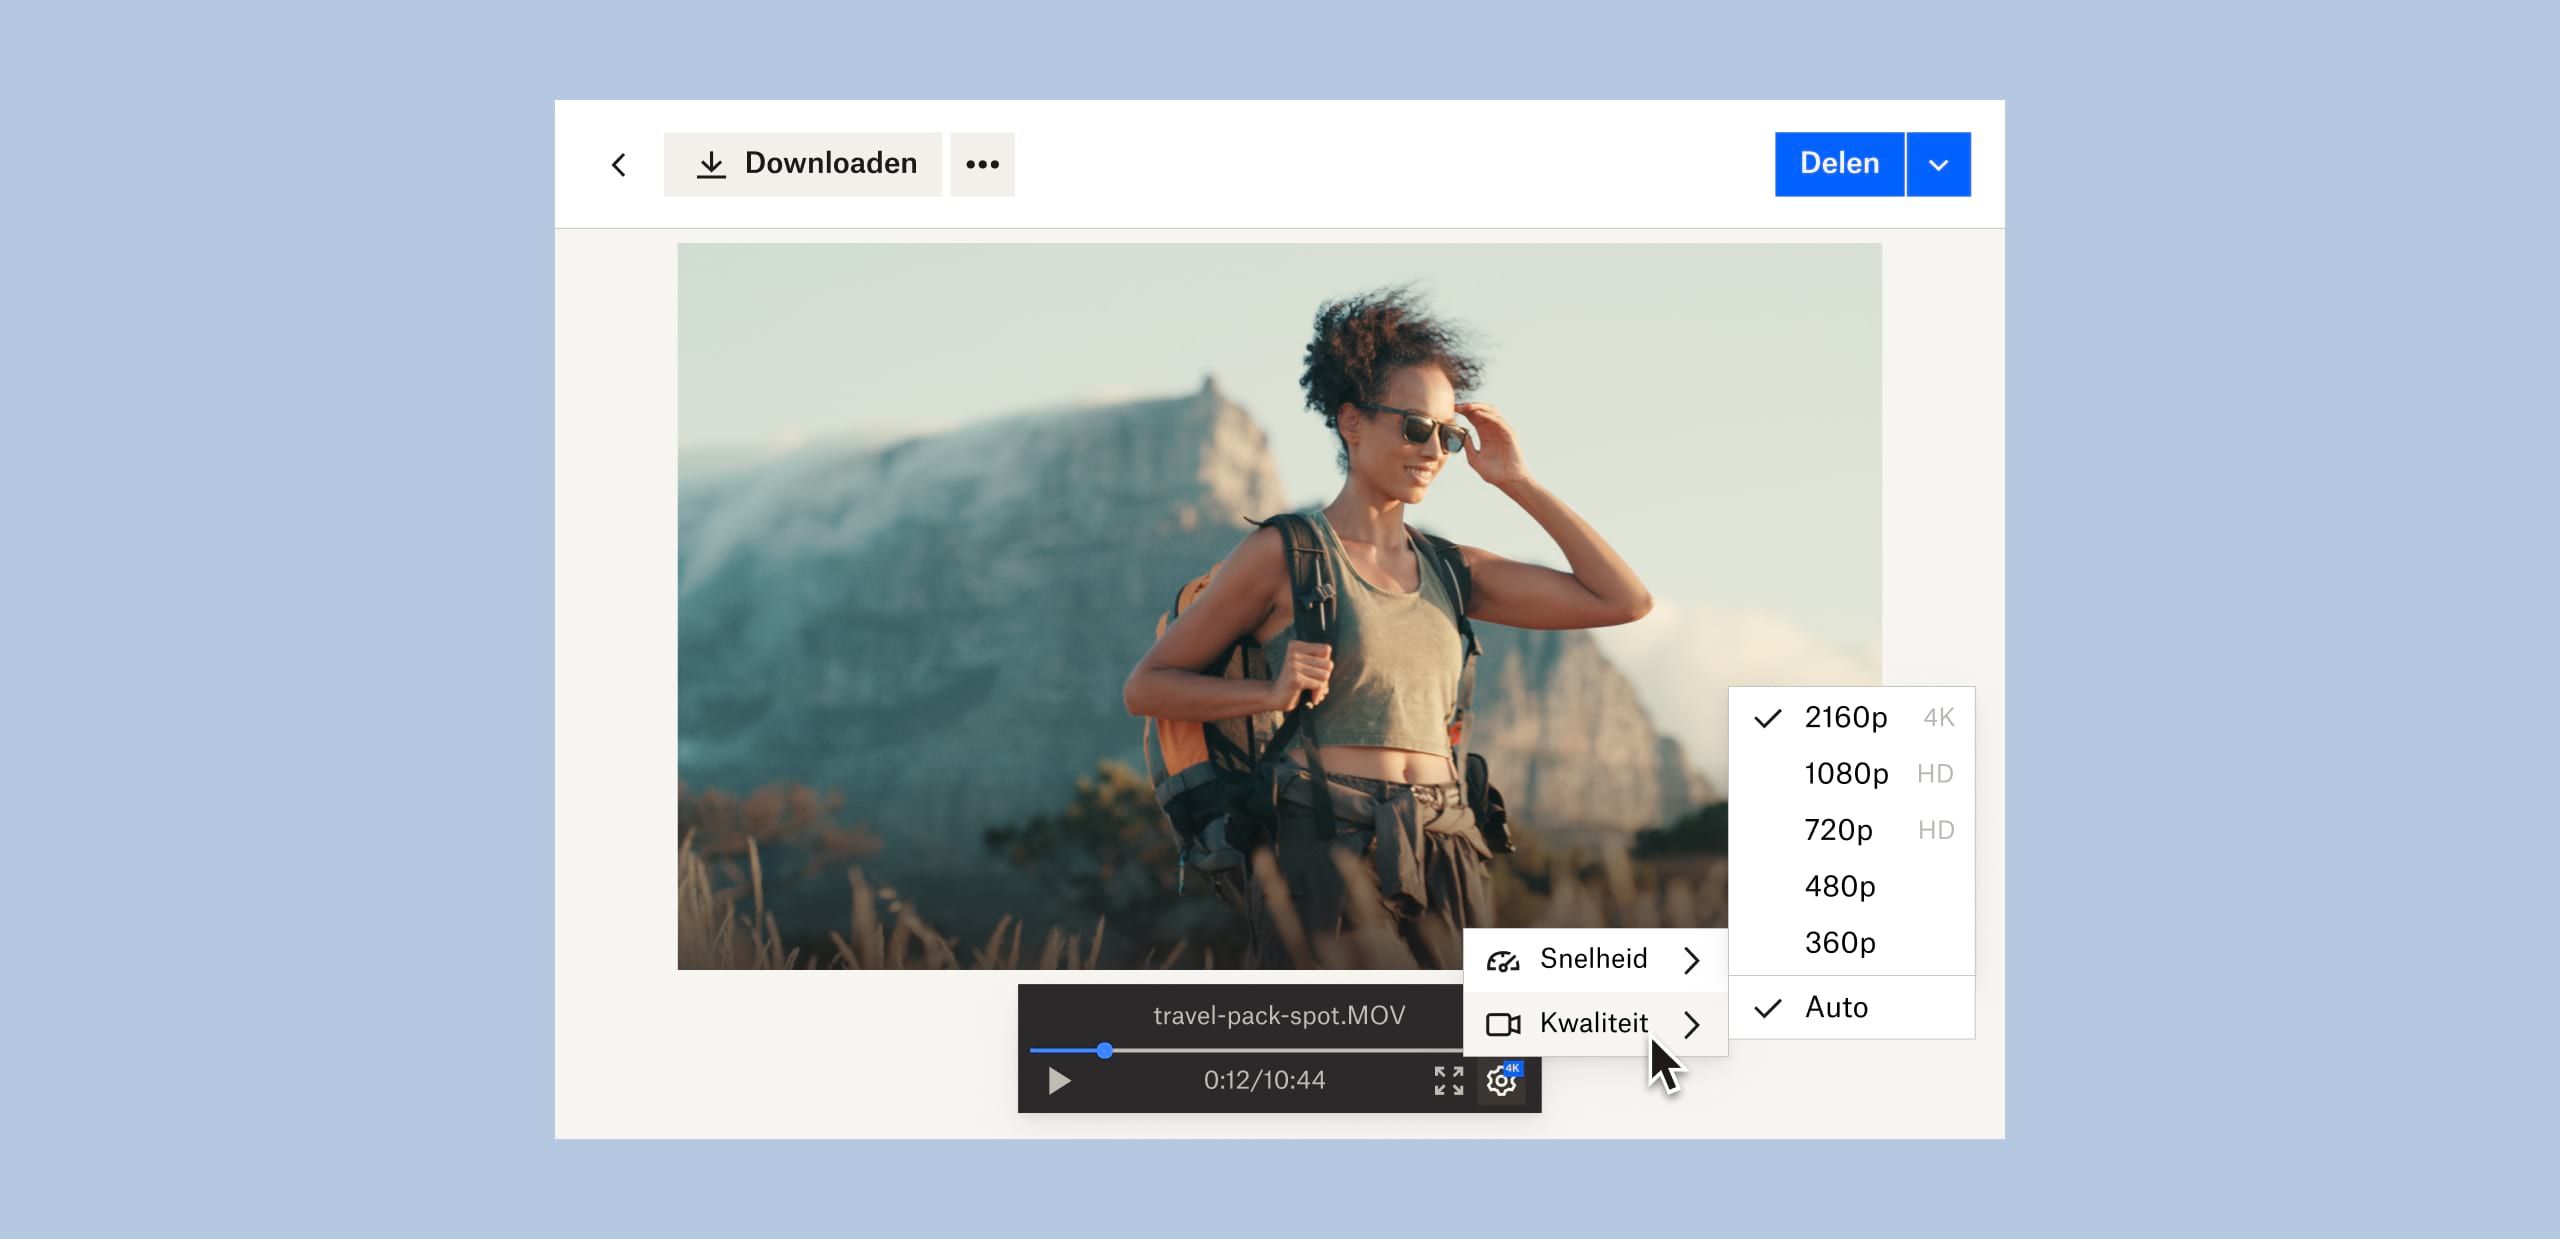 Een gebruiker wijzigt de beeldkwaliteit van een videobestand dat in Dropbox is opgeslagen